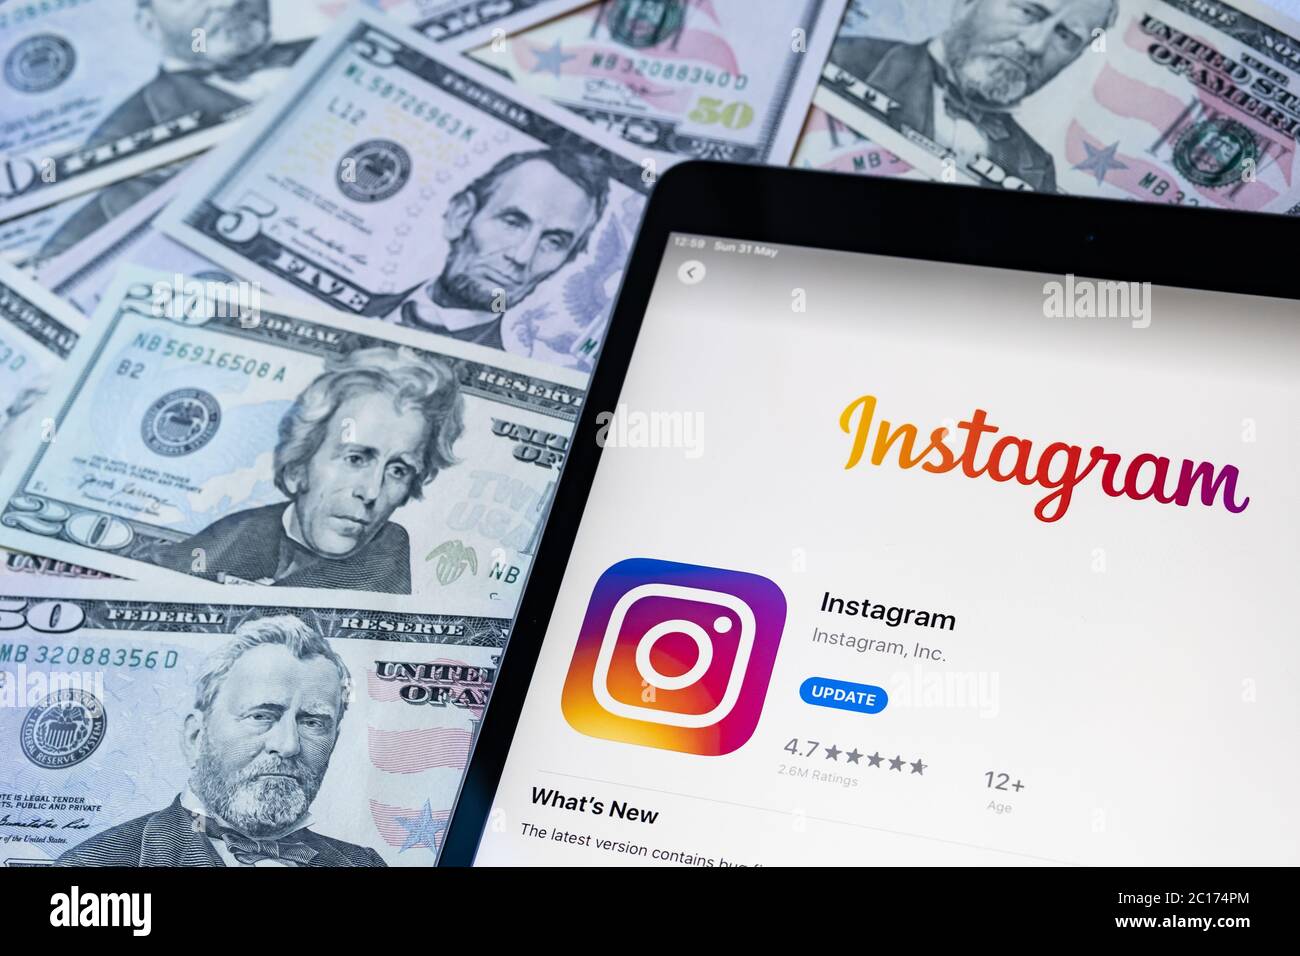 Stone / Großbritannien - Juni 14 2020: Instagram App im Apple Store auf dem ipad-Bildschirm gesehen und US-Dollar herum platziert. Konzeptfoto. Selektive FOC Stockfoto